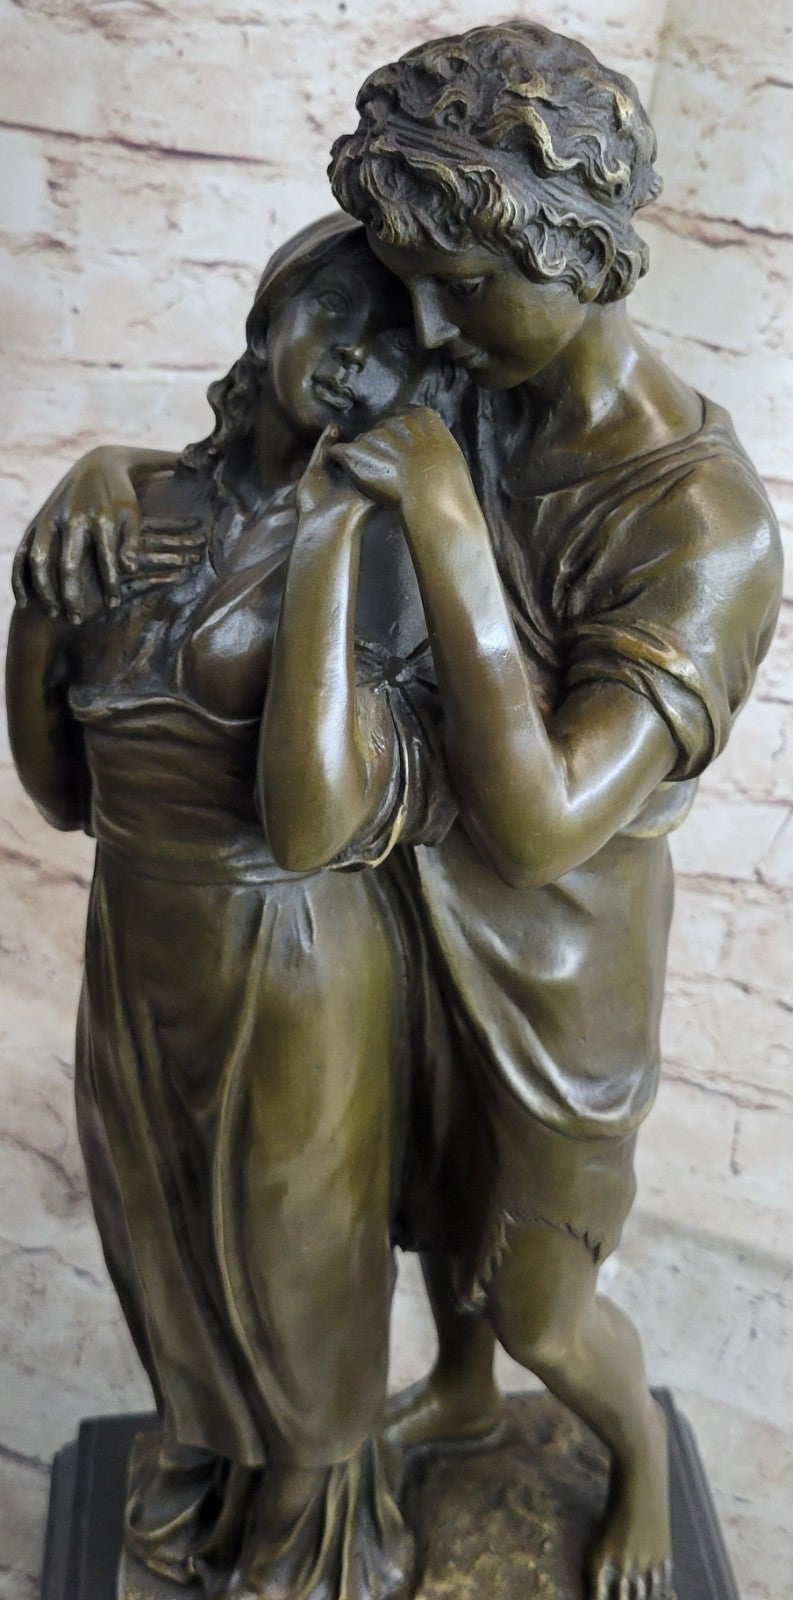 Large Standing Couple Figurine Art Figure Marble Decor Bronze Sculpture Figure